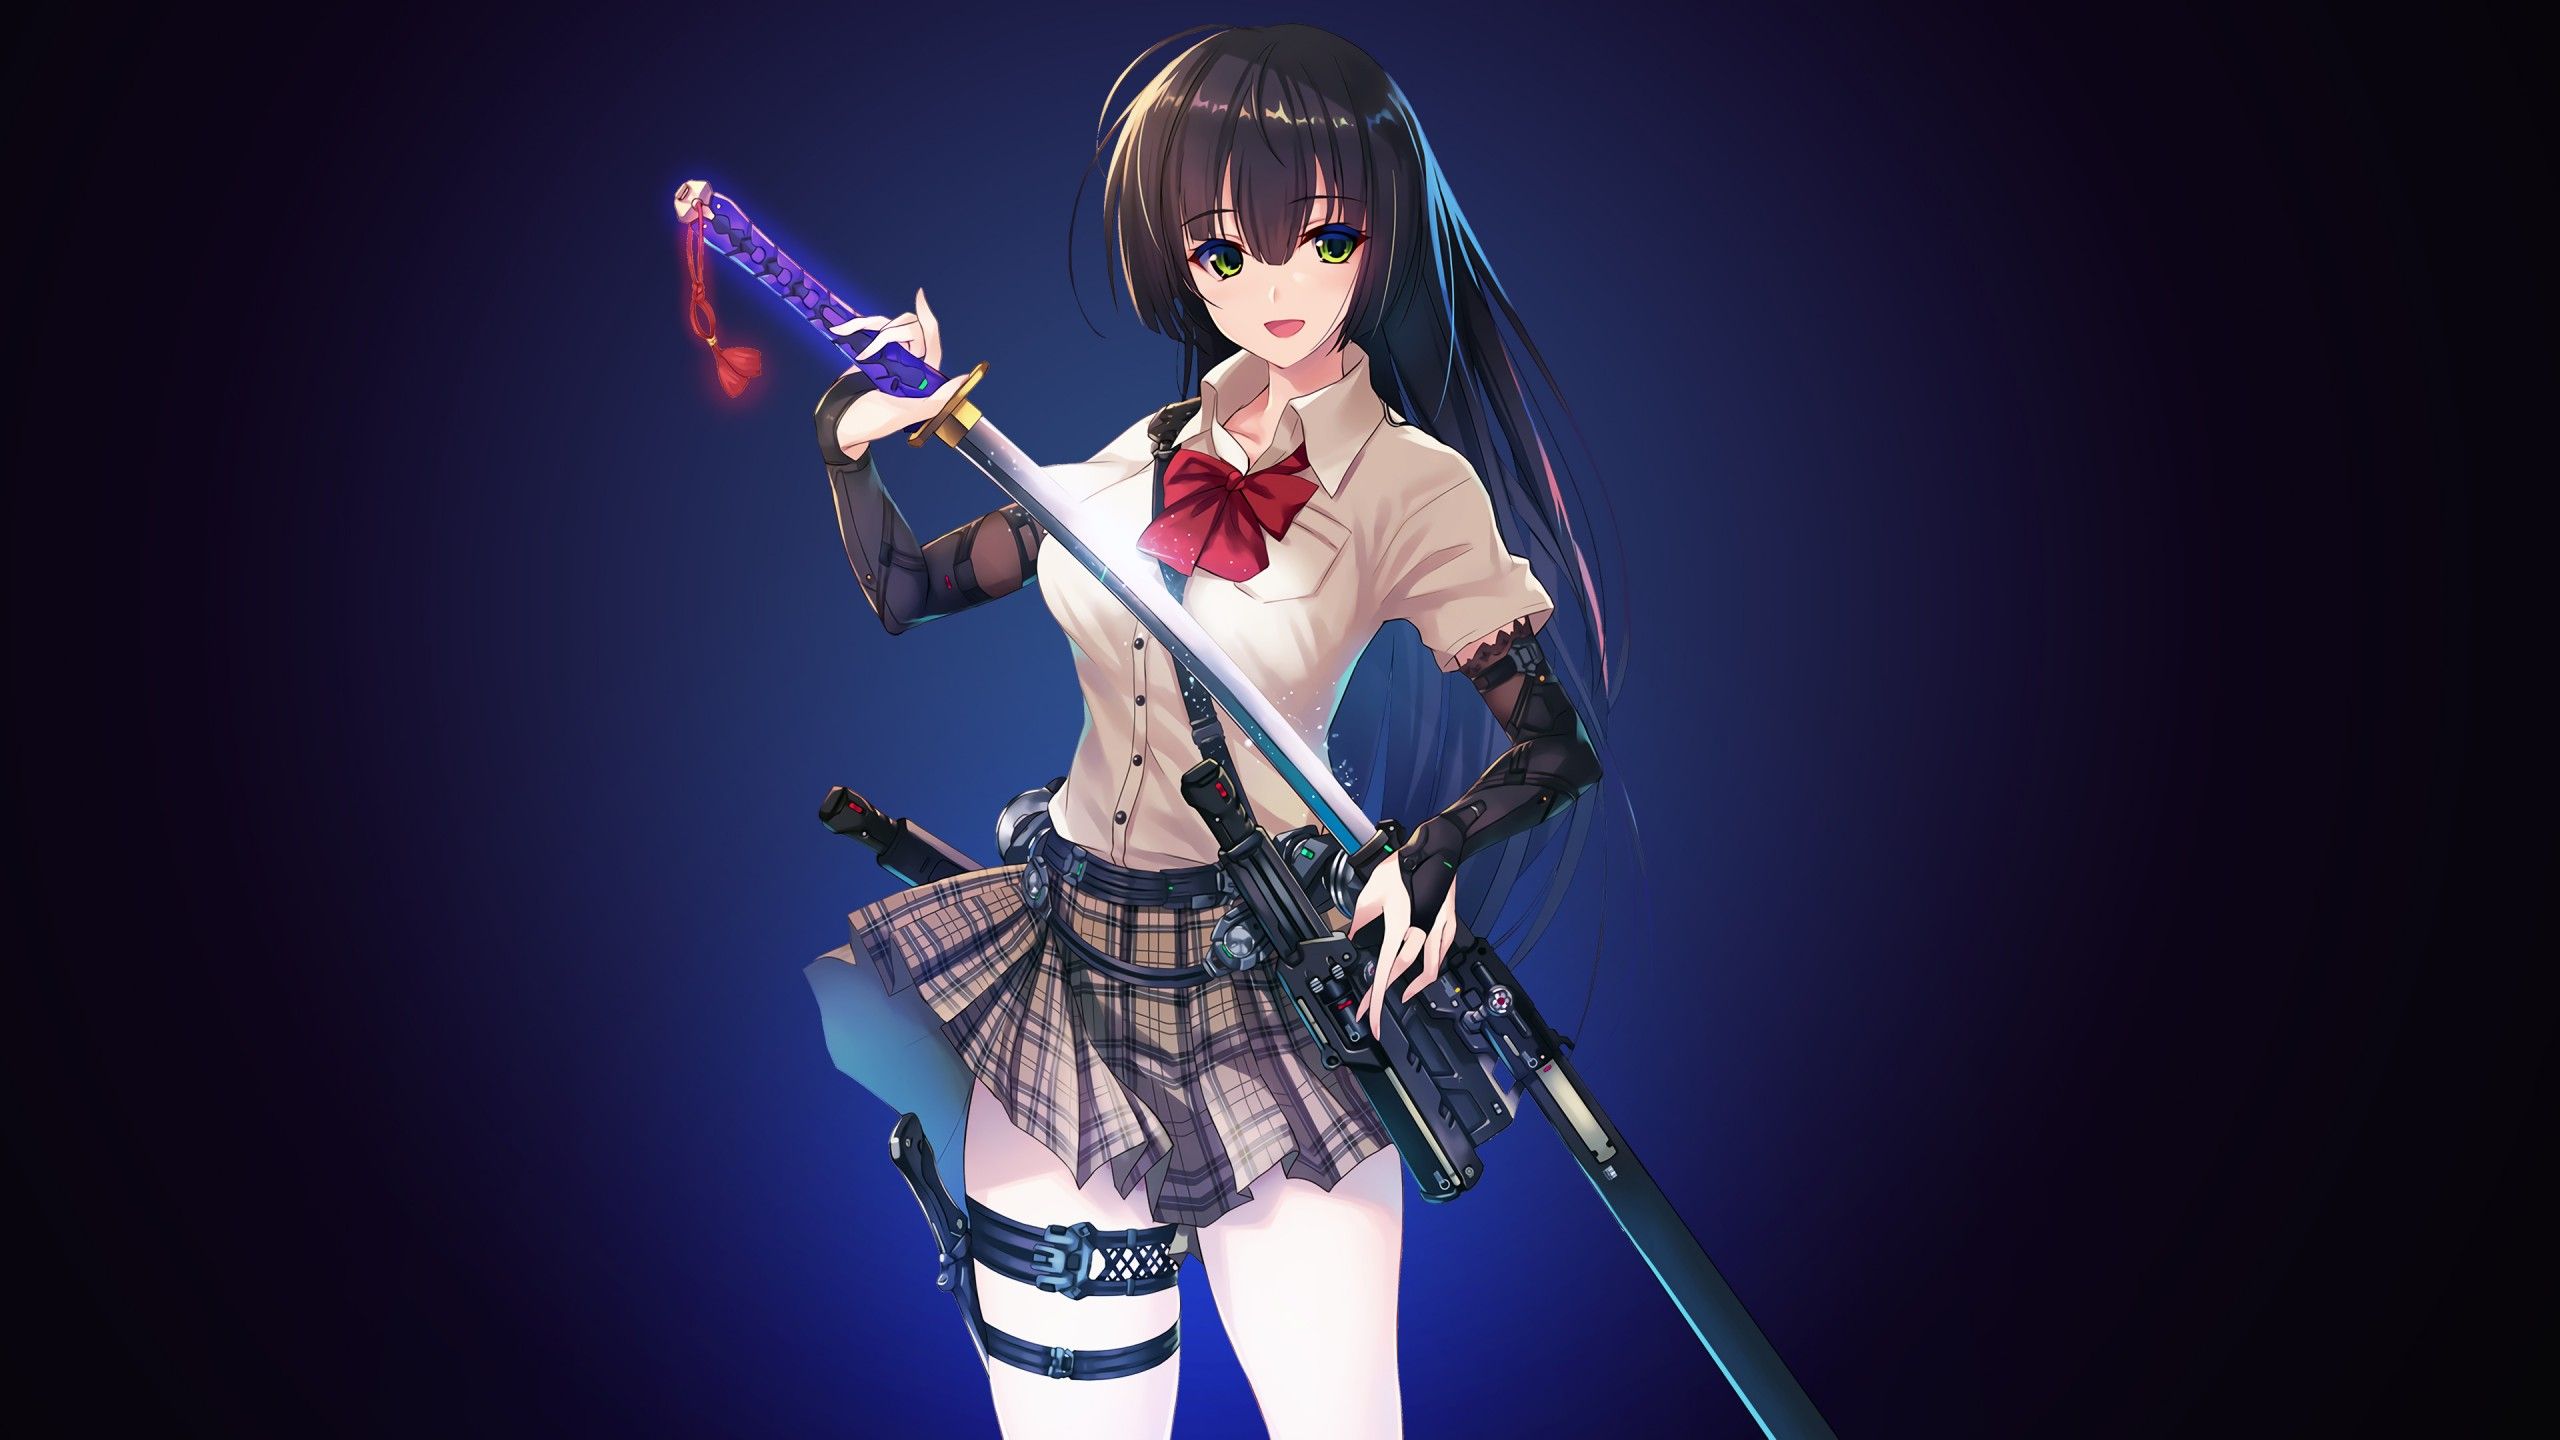 Wallpaper Anime girl, Sword, Katana, Samurai, 4K, Anime,. Wallpaper for iPhone, Android, Mobile and Desktop